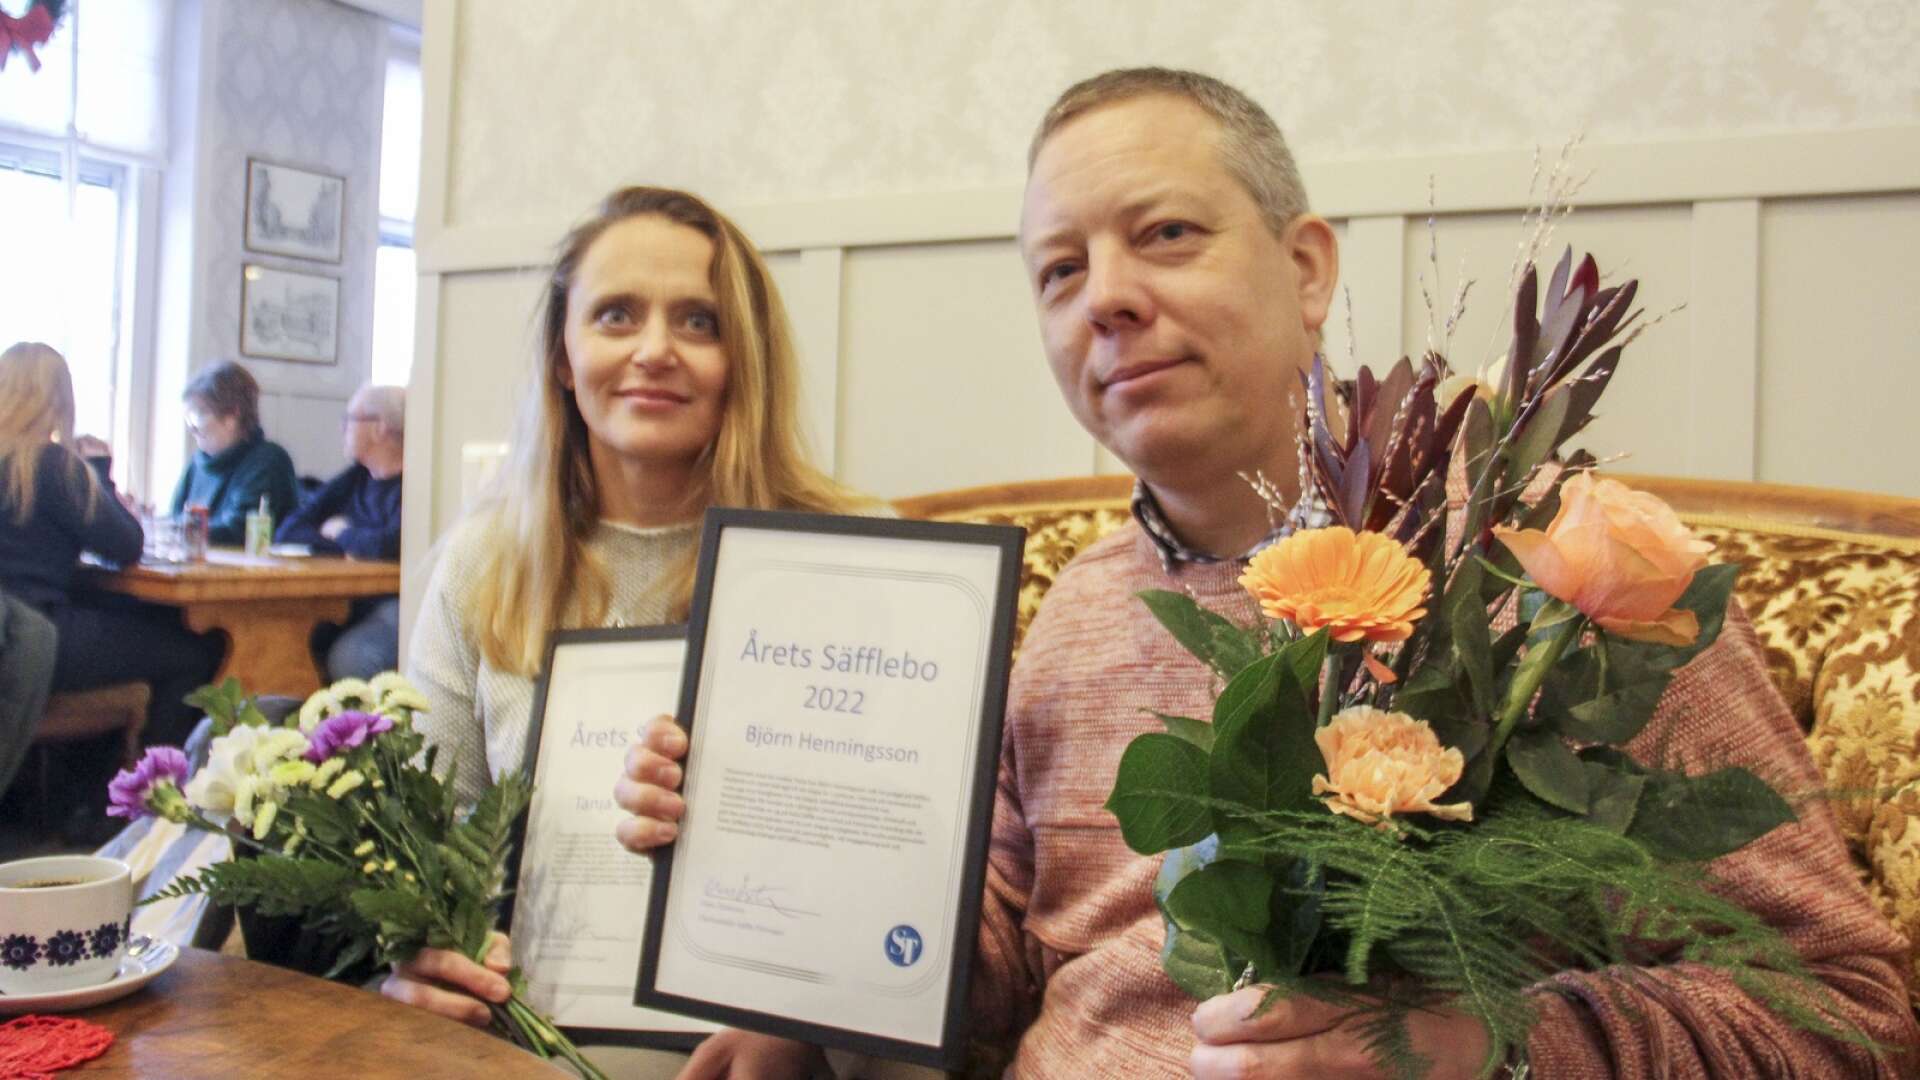 Tanja och Björn Henningsson blir Årets Säfflebo 2022.